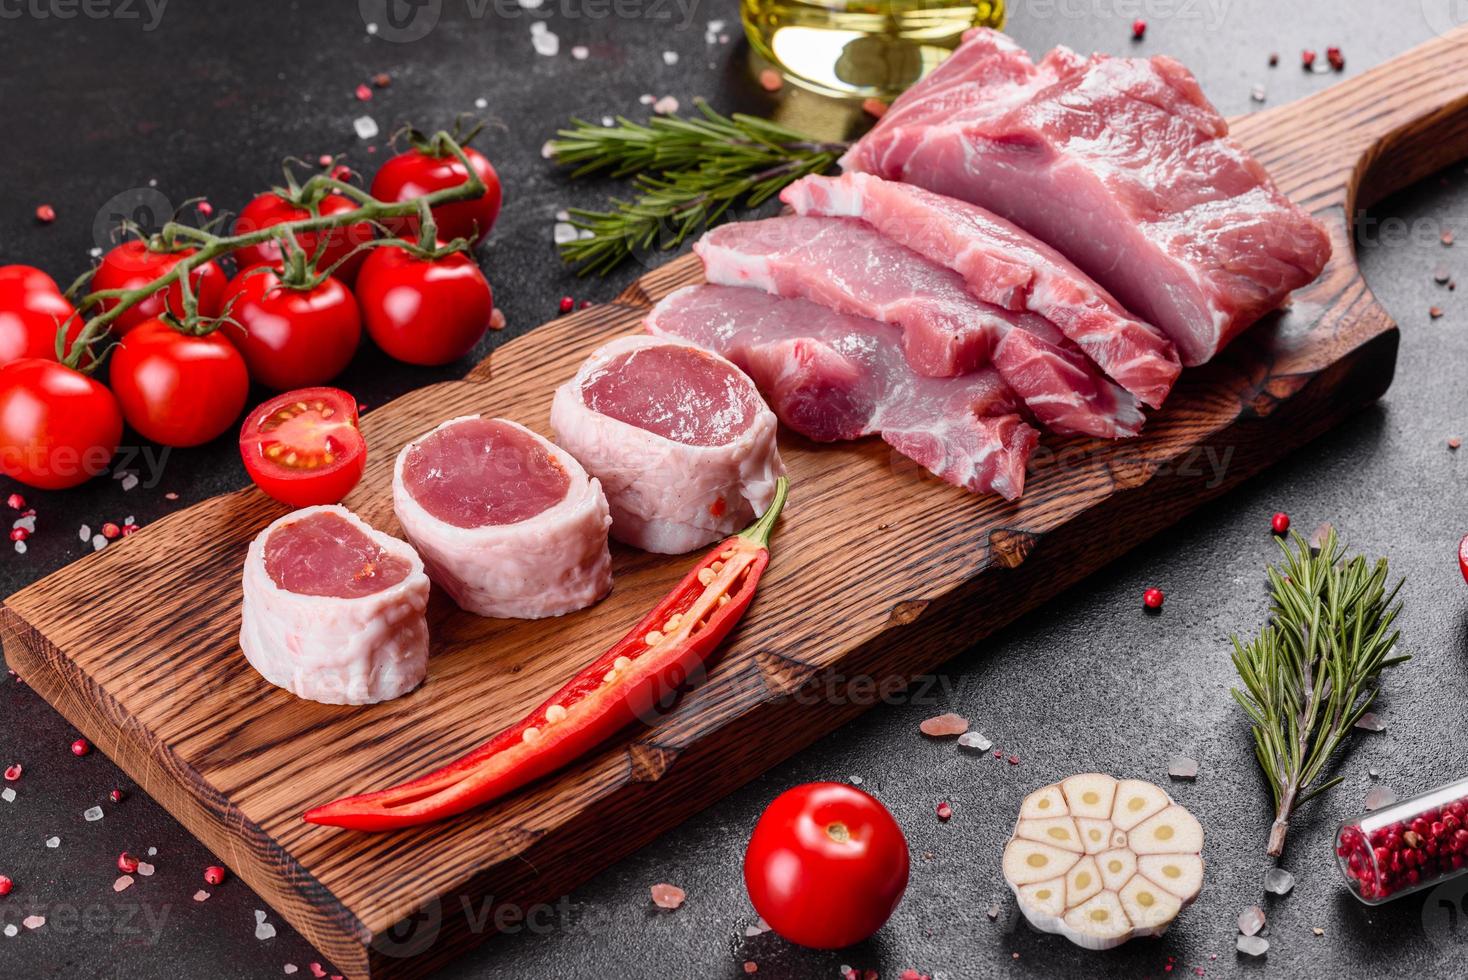 Pedaços de carne de porco prontos para cozinhar em um fundo escuro na cozinha foto